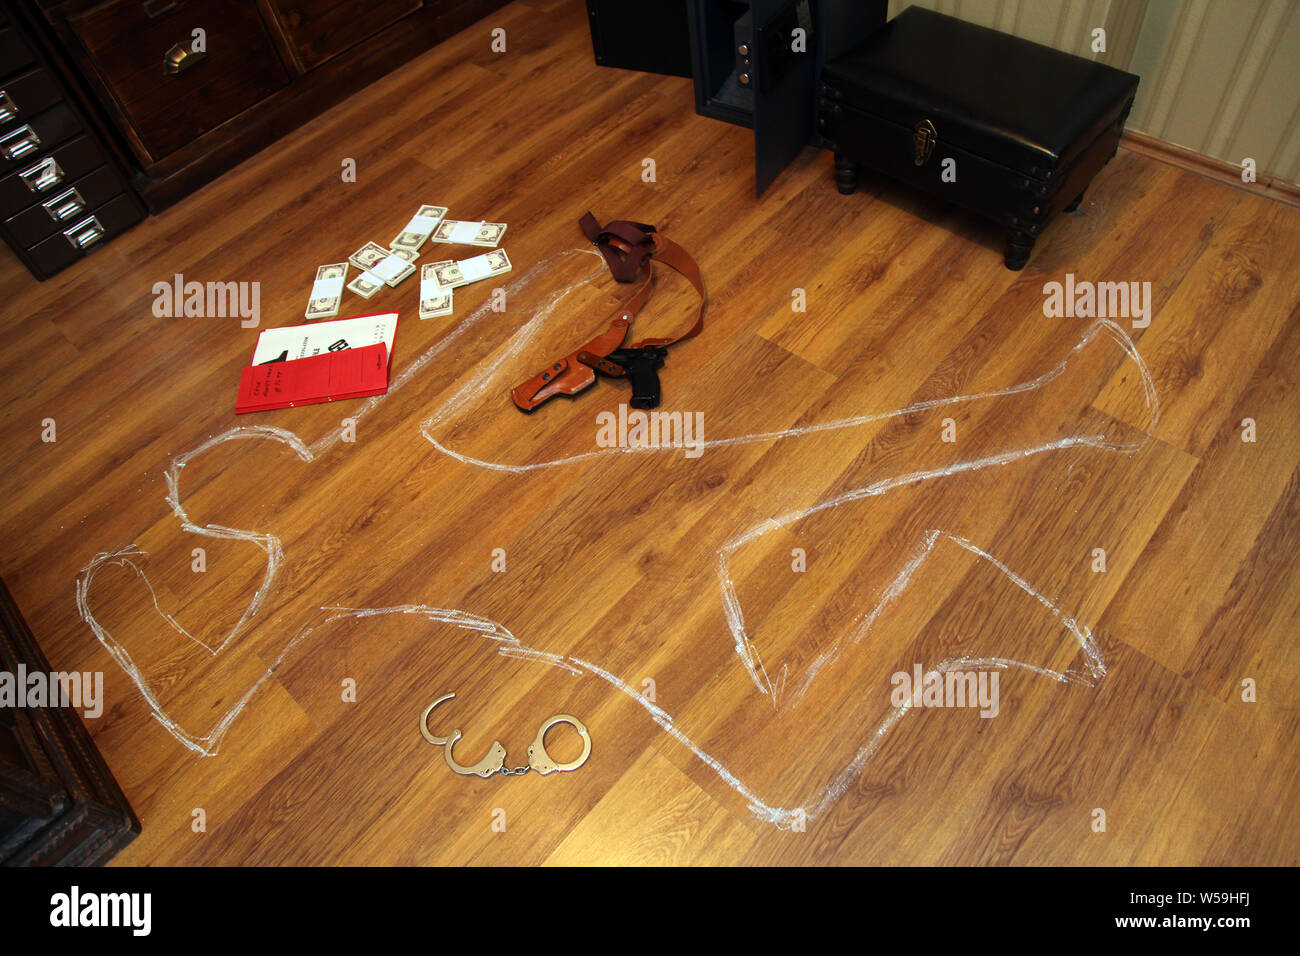 Gun, money, handcuffs and secret files in the crime scene Stock Photo